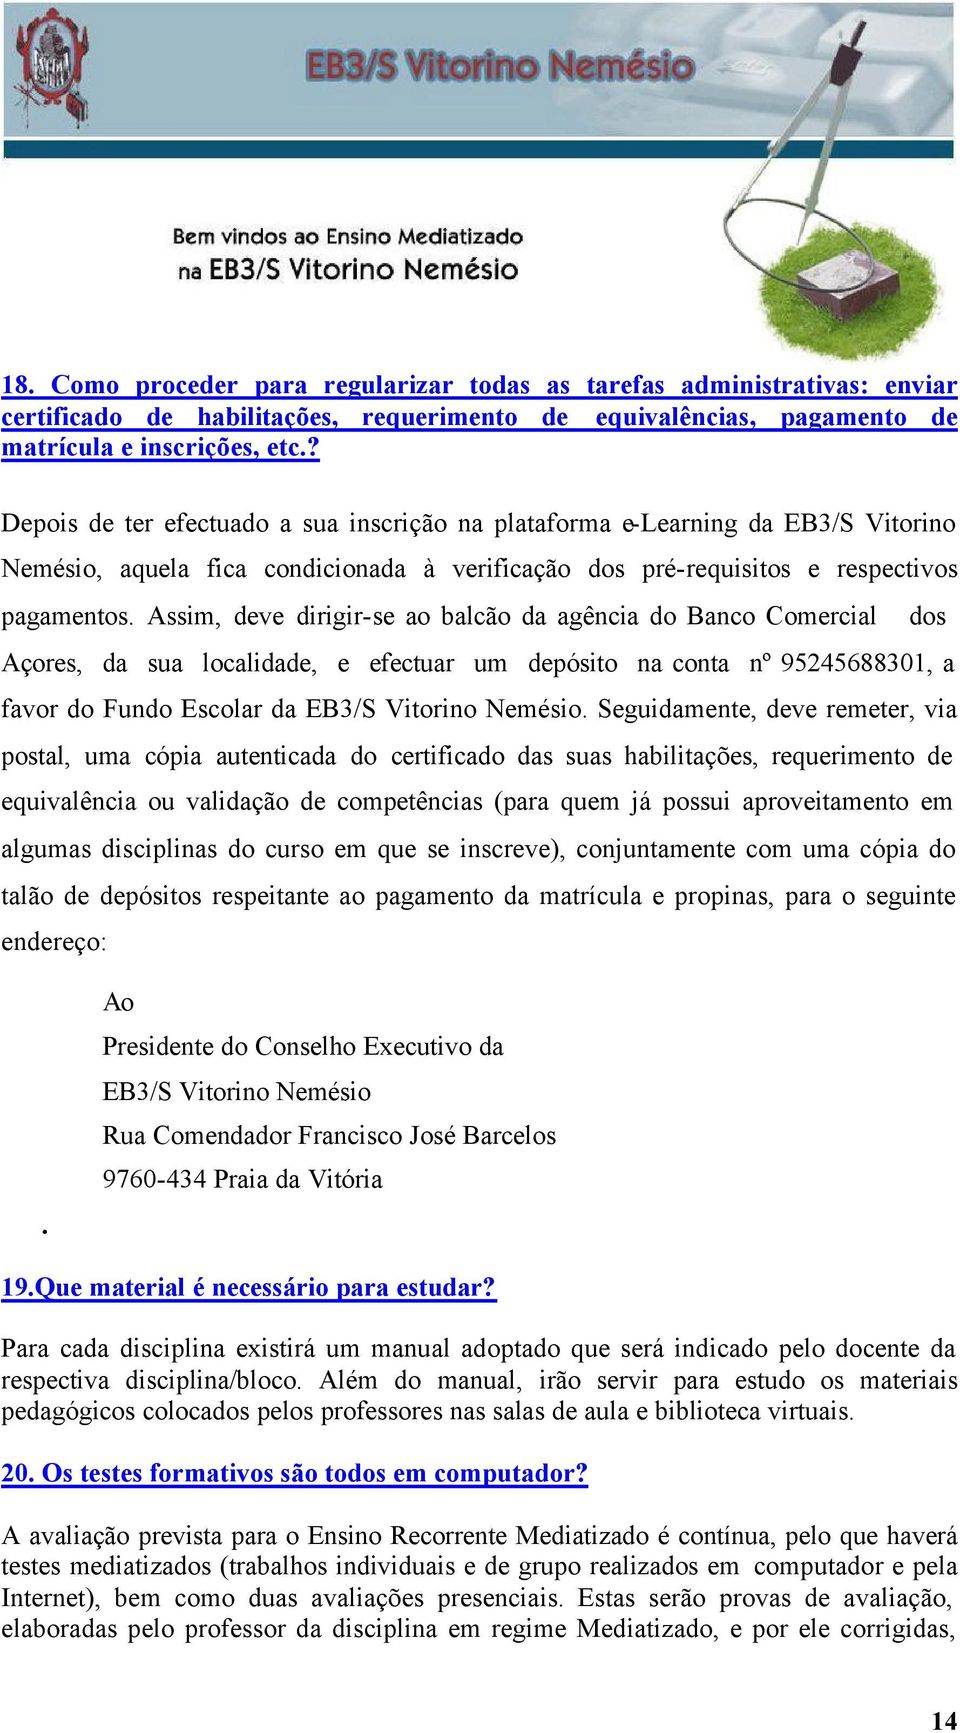 Assim, deve dirigir-se ao balcão da agência do Banco Comercial dos Açores, da sua localidade, e efectuar um depósito na conta nº 95245688301, a favor do Fundo Escolar da EB3/S Vitorino Nemésio.